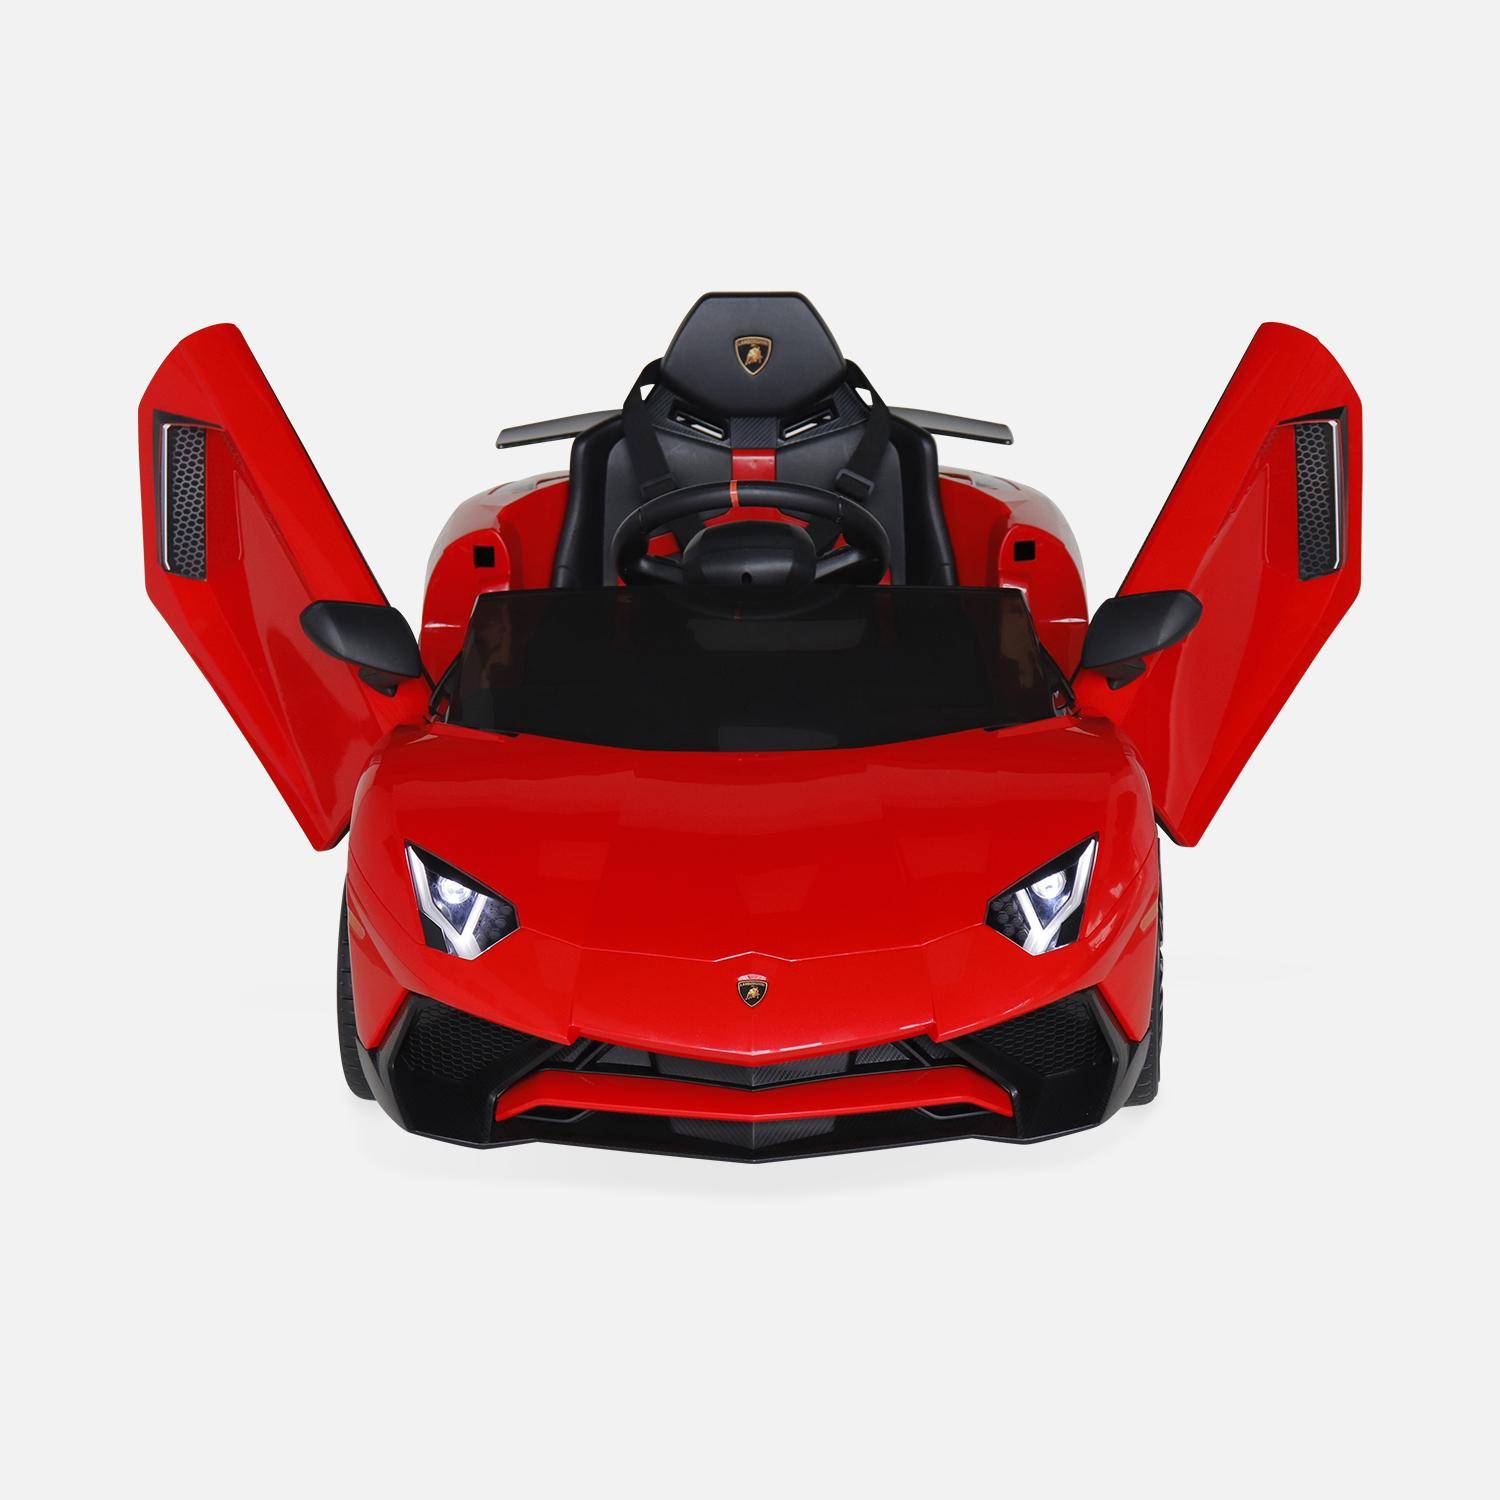 12V Lamborghini elektrische kinderauto, rood, 1 zitplaats, met autoradio, afstandsbediening, MP3, USB-poort en functionele koplampen Photo5